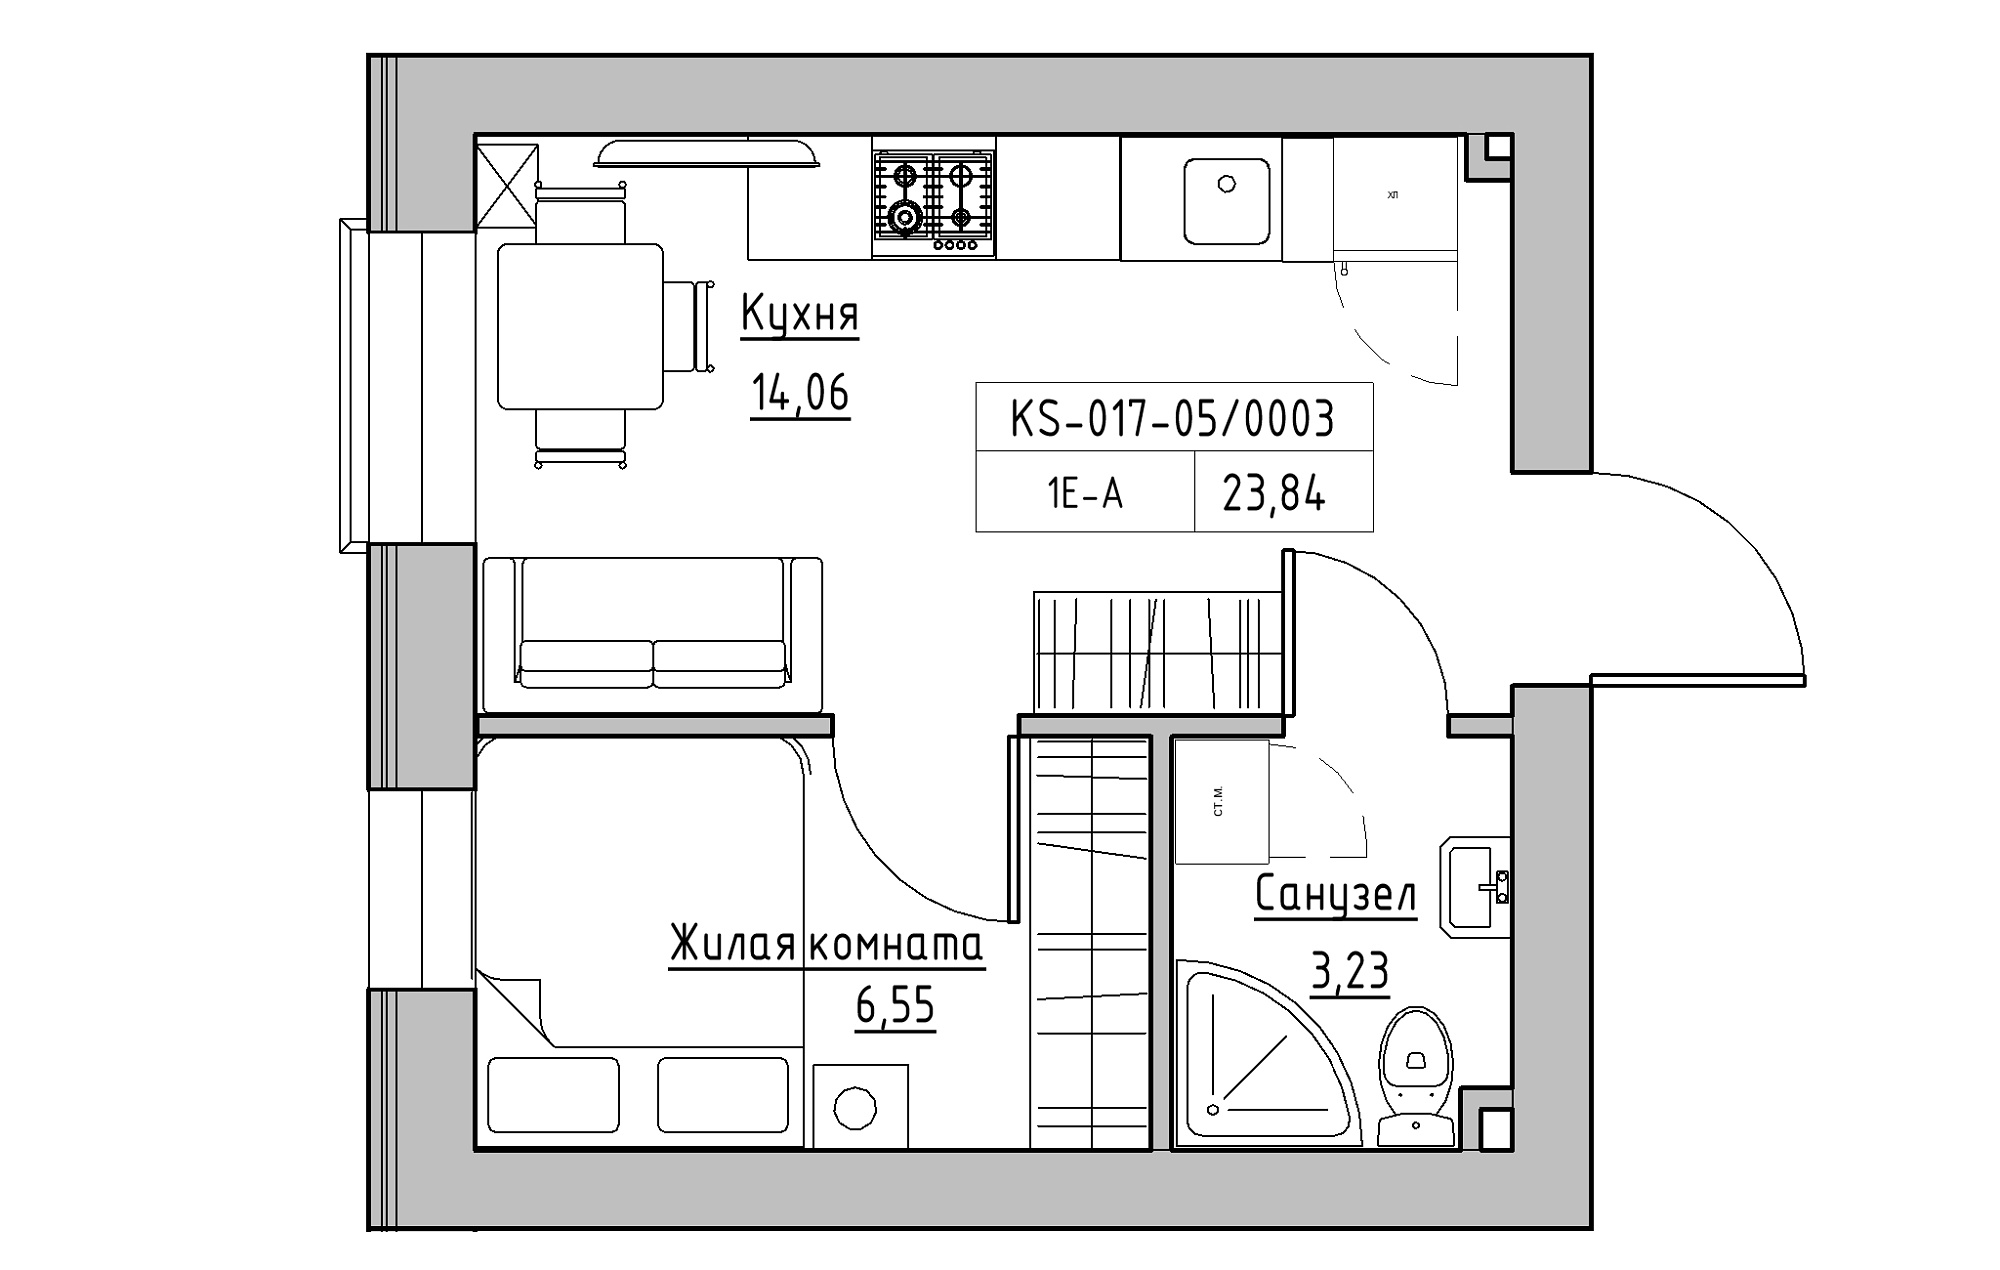 Планування 1-к квартира площею 23.84м2, KS-017-05/0003.